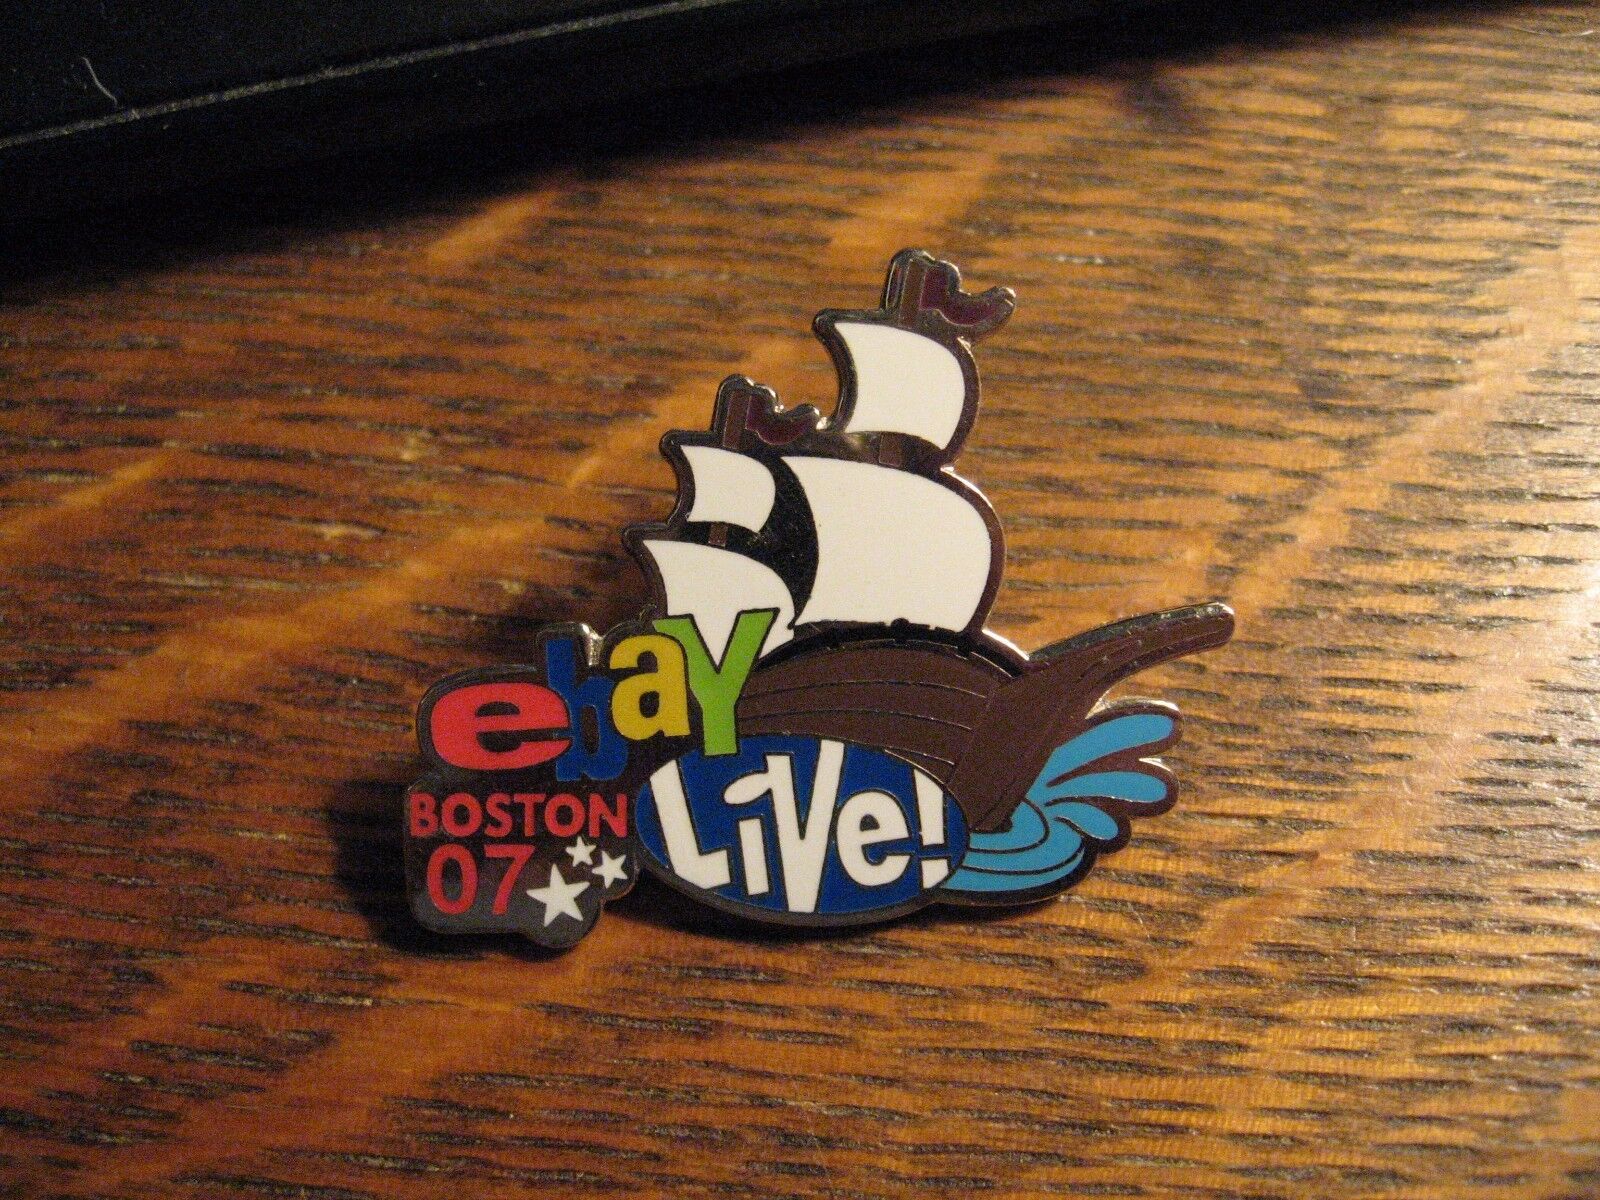 Ebay Live Lapel Pin - Boston Massachusetts Usa 2007 Conference Ship Lapel Pin